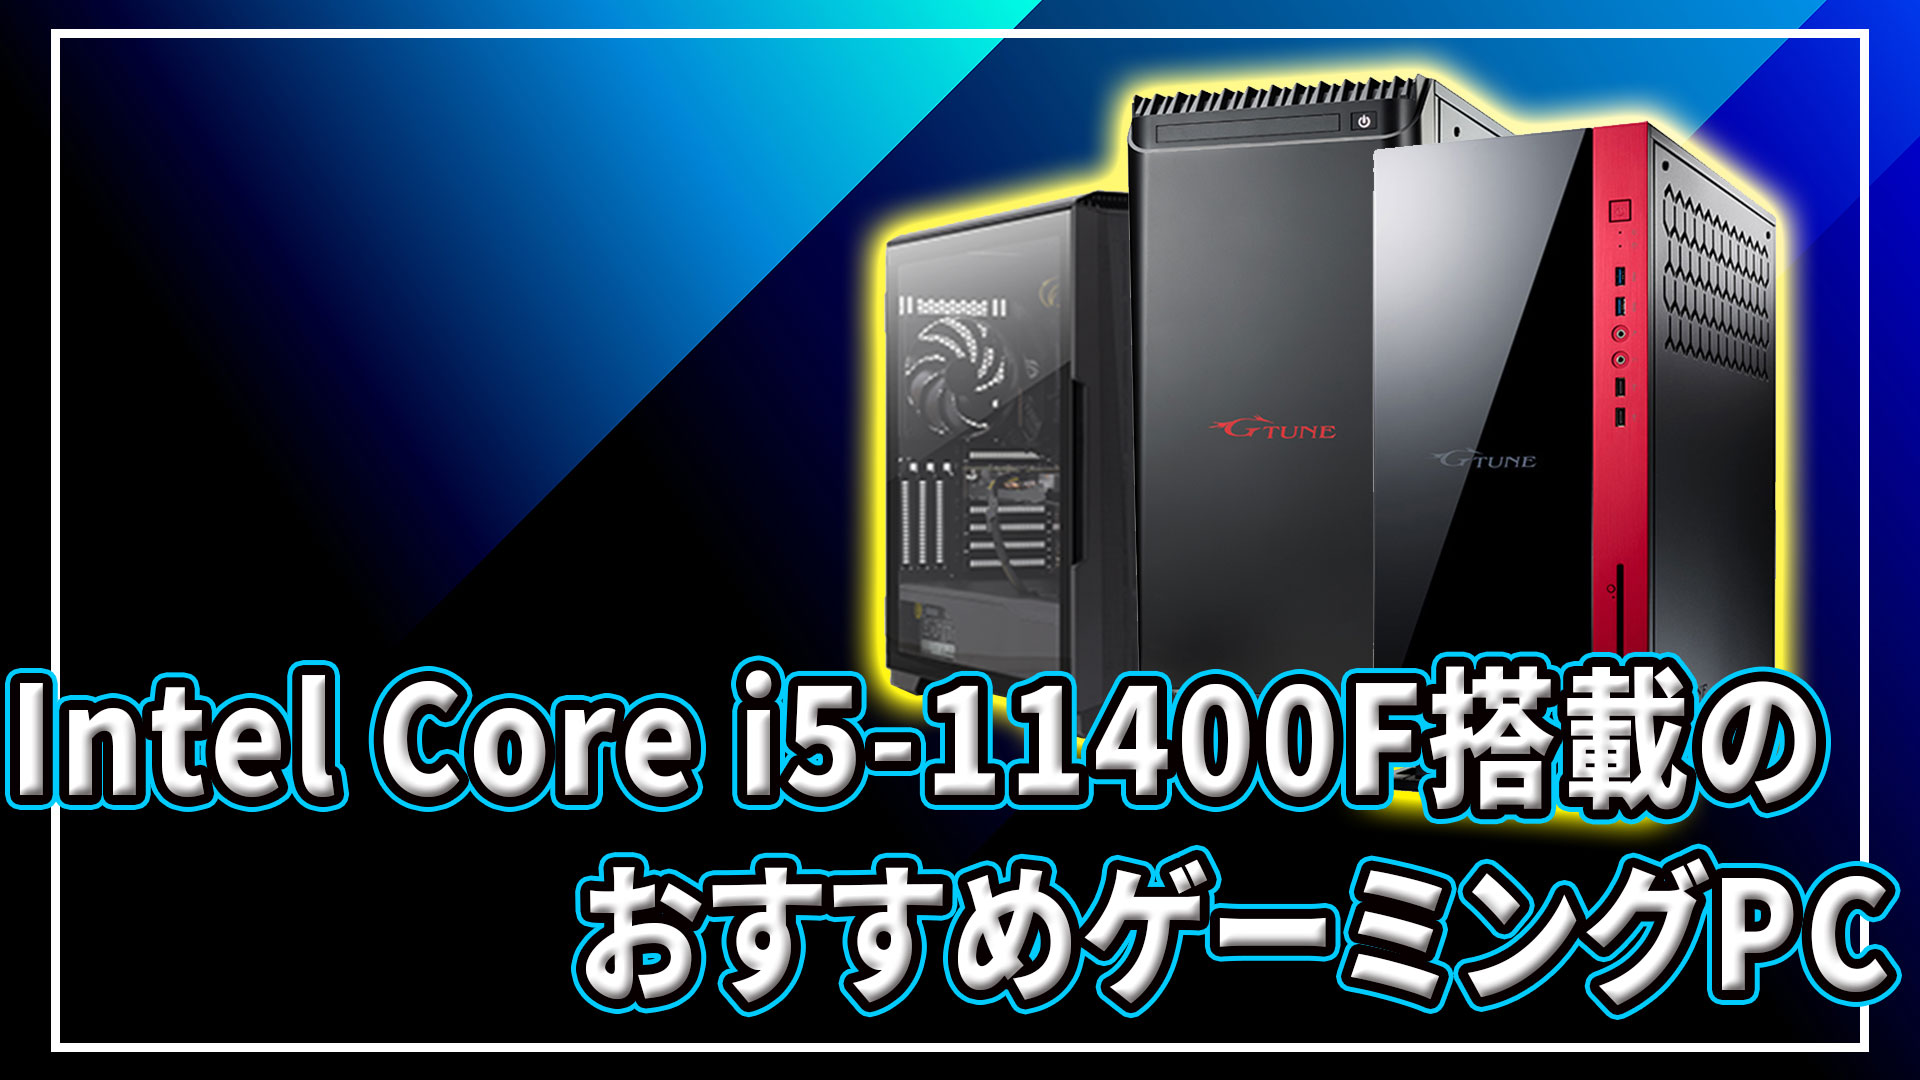 PC/タブレット デスクトップ型PC Intel Core i5-11400F｣搭載のおすすめゲーミングPC2選 | あしゅらだ